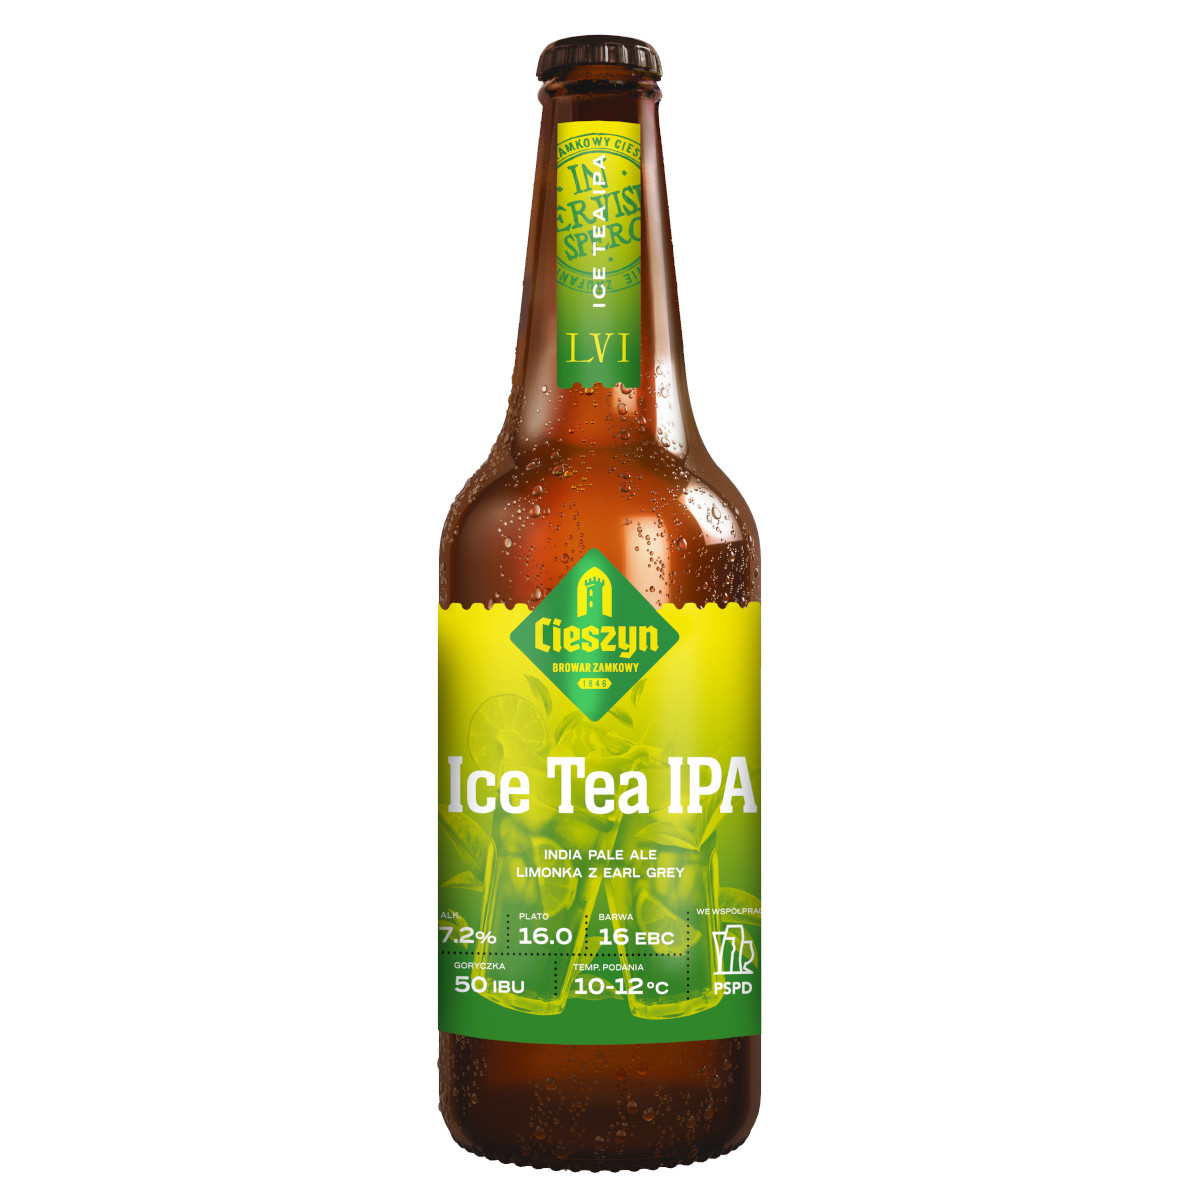 Cieszyn Ice Tea IPA